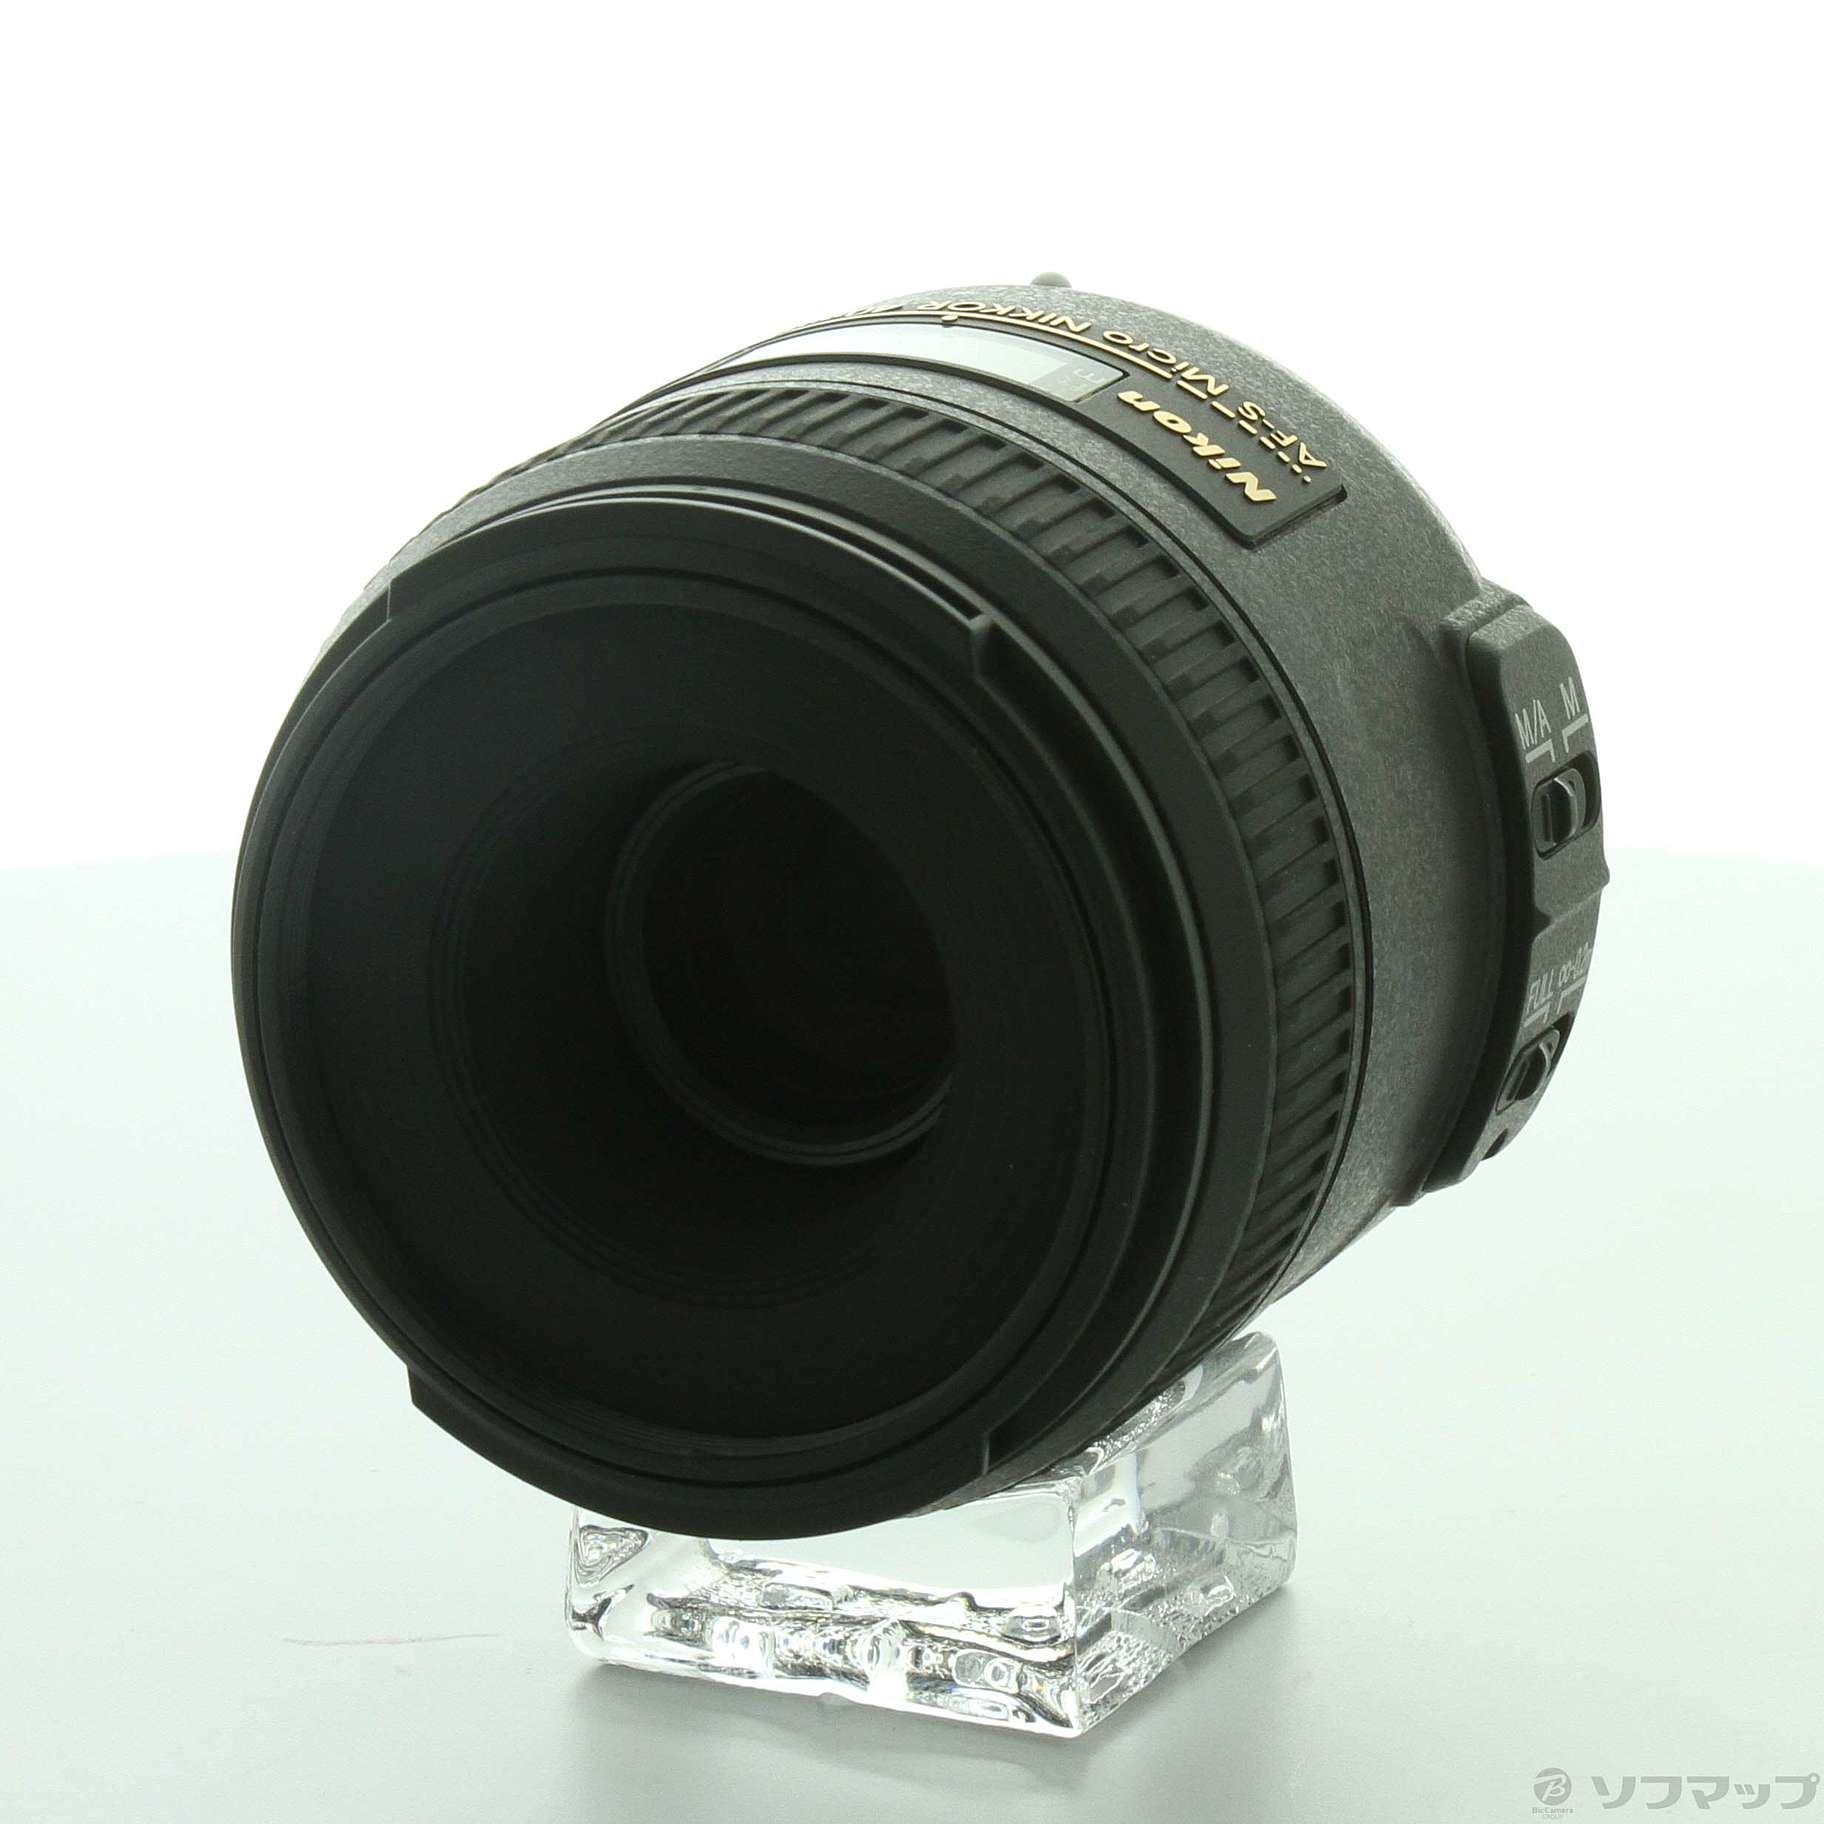 【未使用品】AF-S DX Micro NIKKOR 40mm f/2.8G